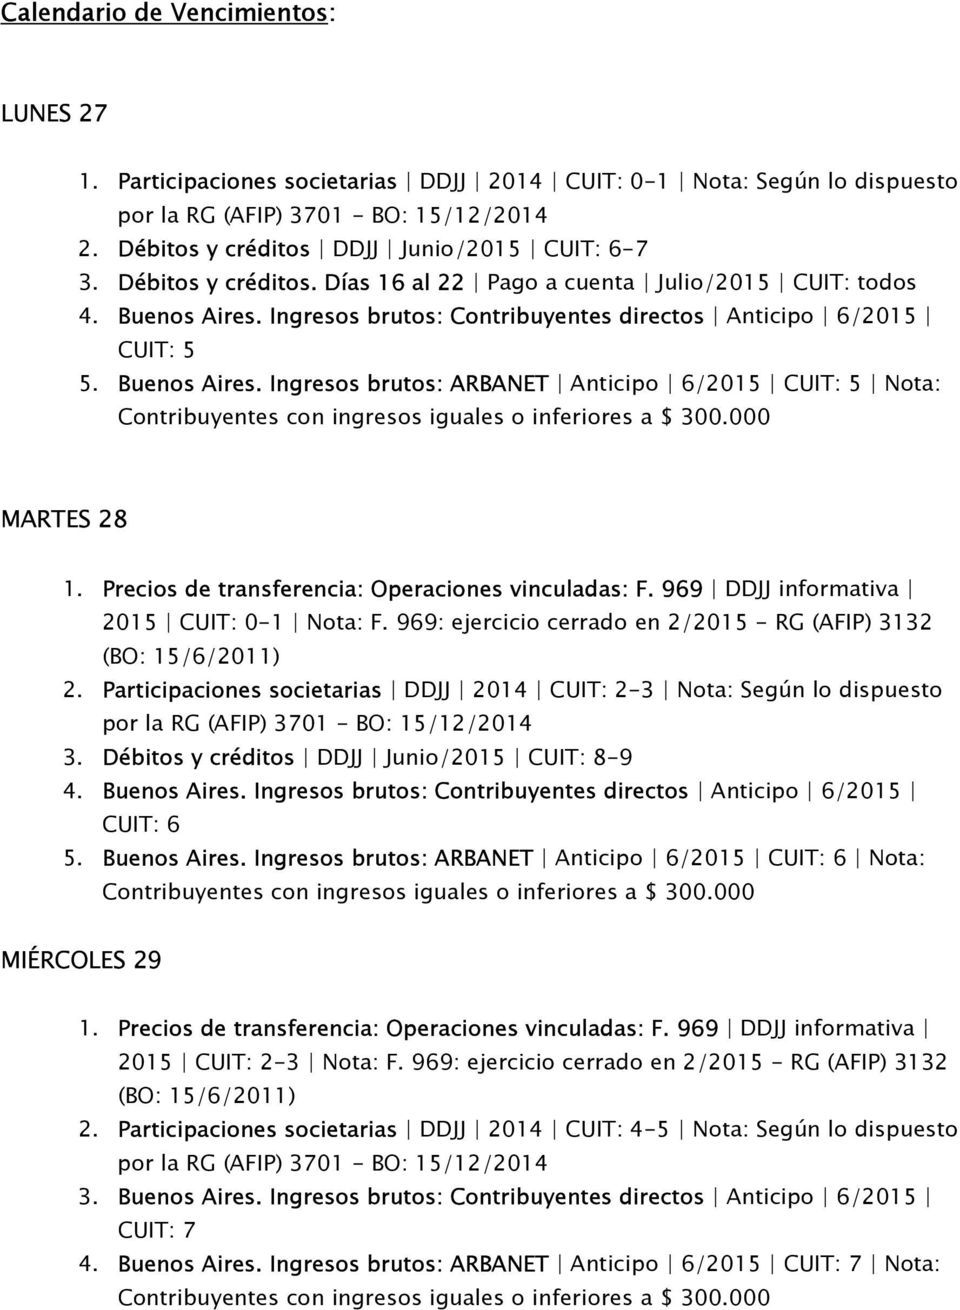 969: ejercicio cerrado en 2/2015 - RG (AFIP) 3132 2. Participaciones societarias DDJJ 2014 CUIT: 2-3 Nota: Según lo dispuesto 3. Débitos y créditos DDJJ Junio/2015 CUIT: 8-9 4. Buenos Aires.